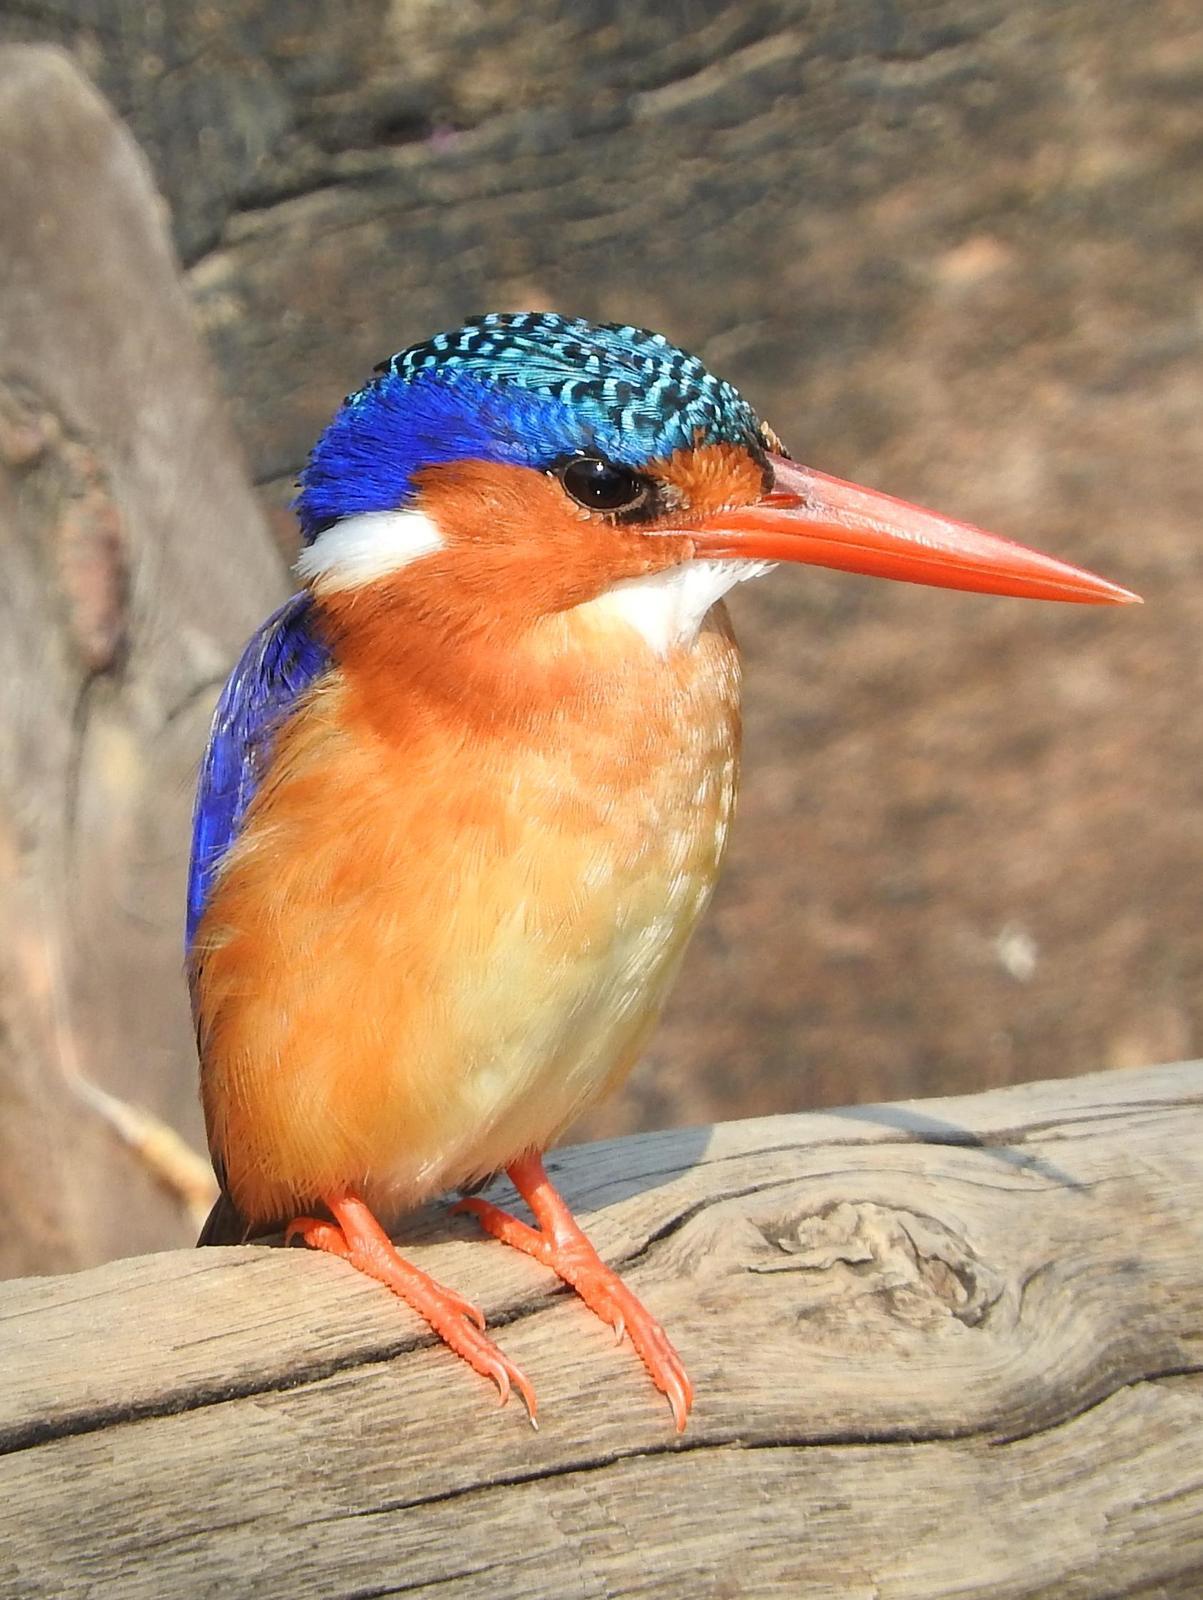 Malachite Kingfisher Photo by Todd A. Watkins